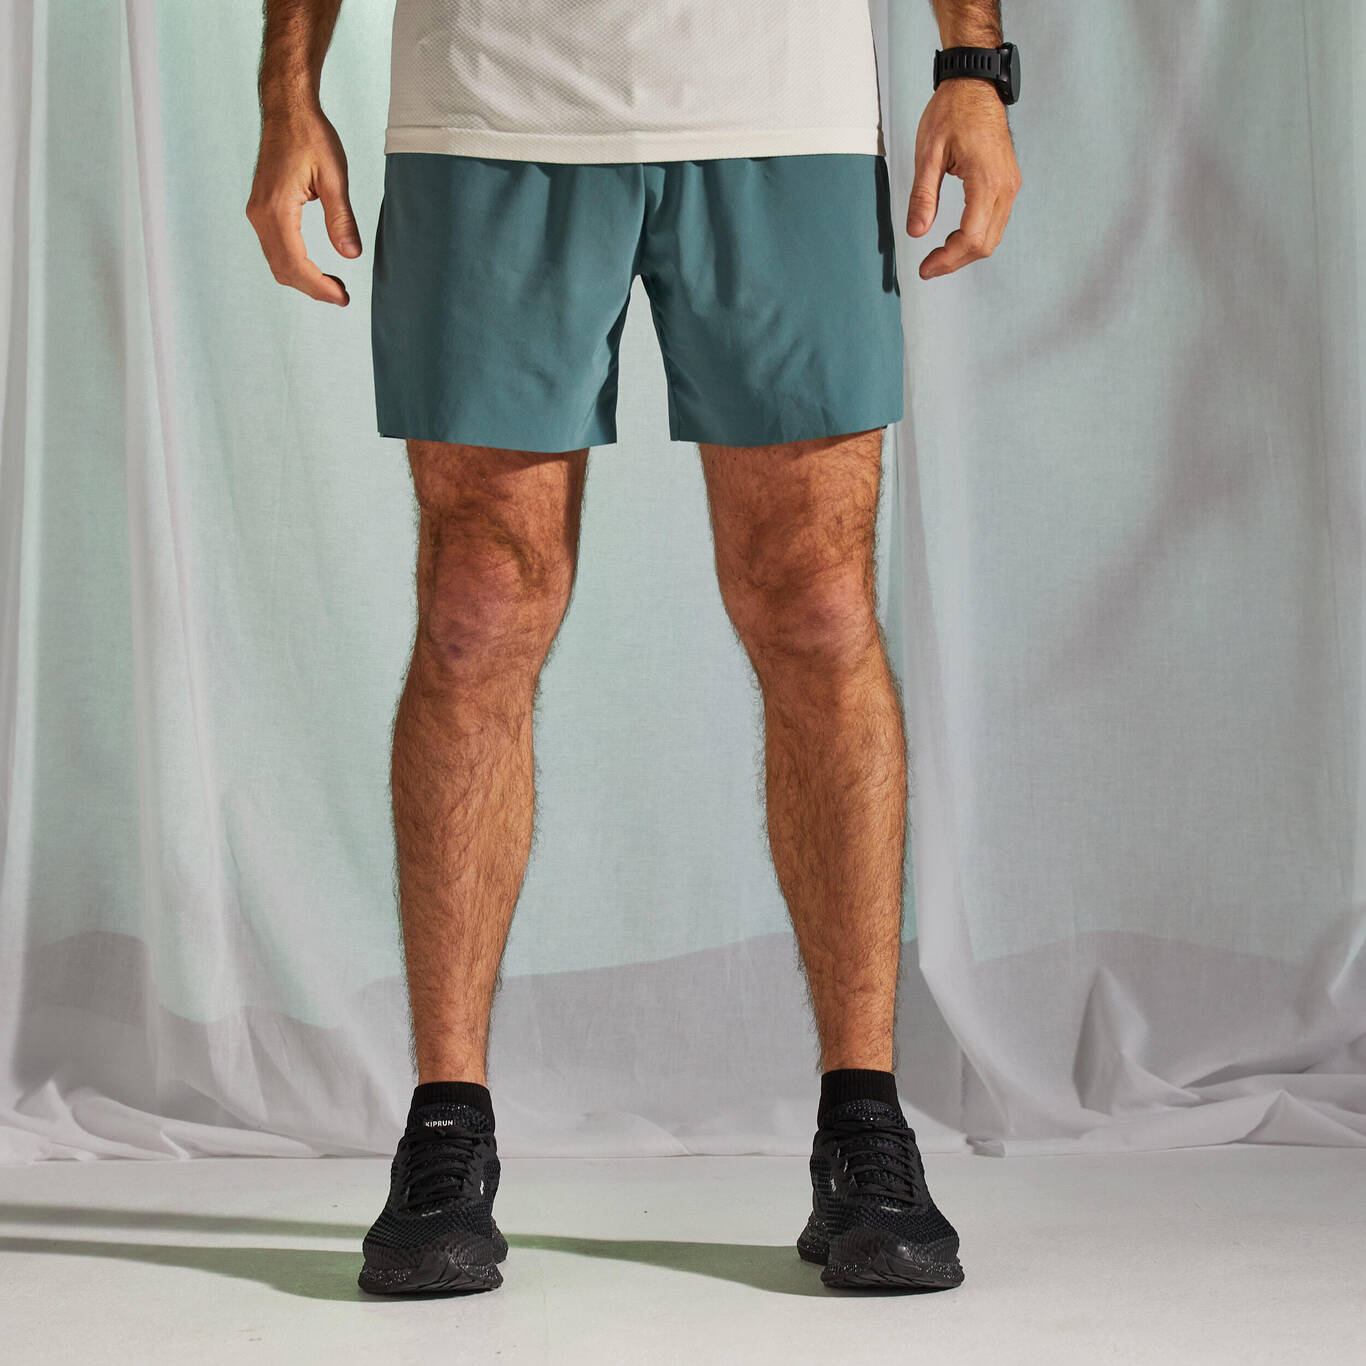 Men's Running Light Shorts Light - limited edition green